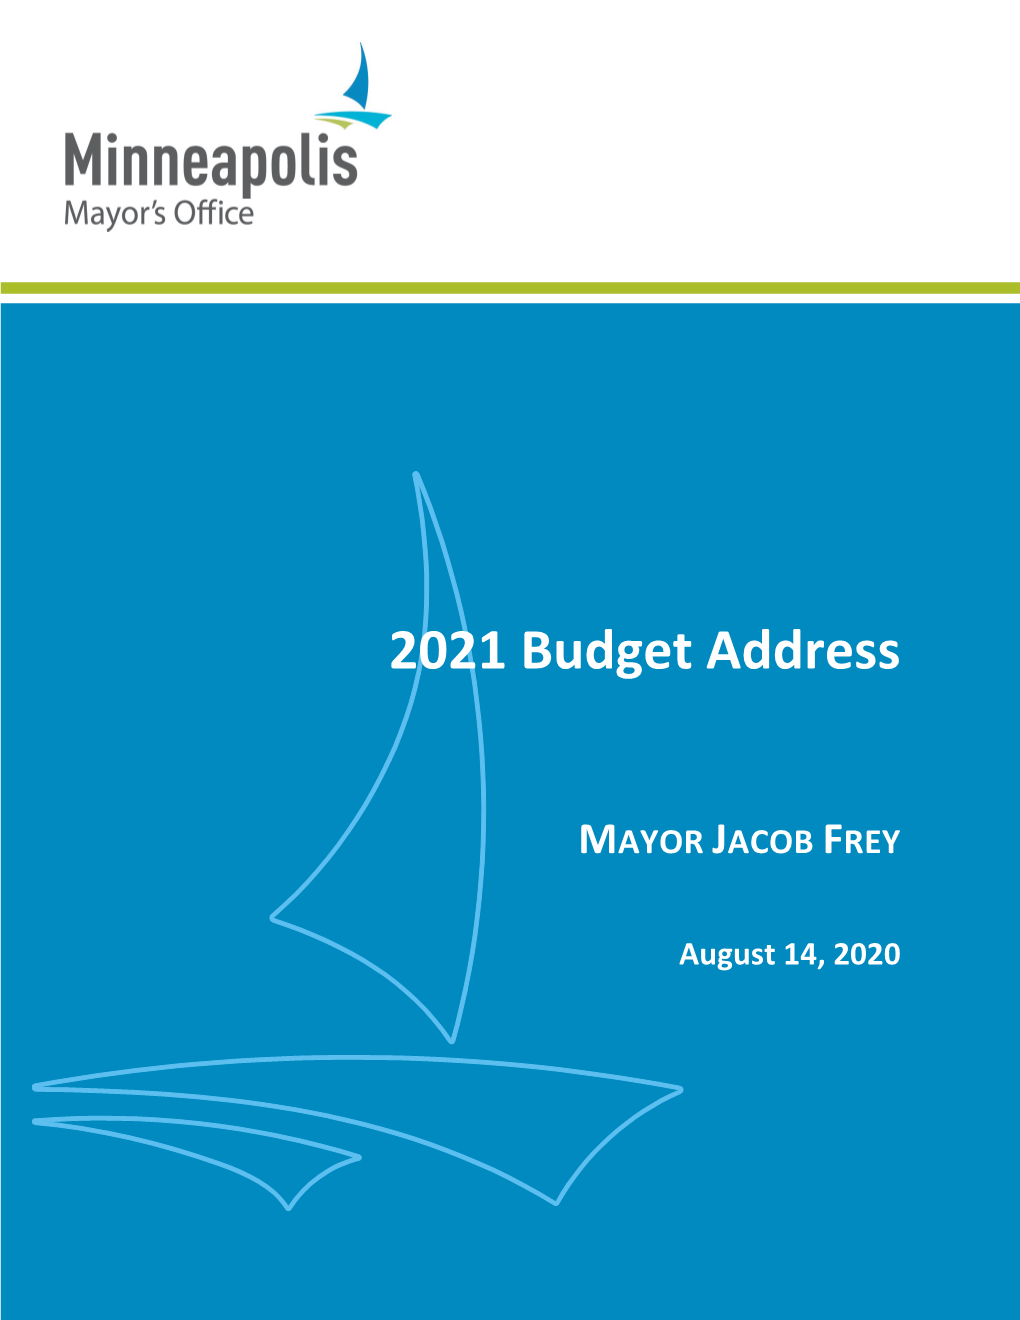 Mayor Frey's 2021 Budget Address